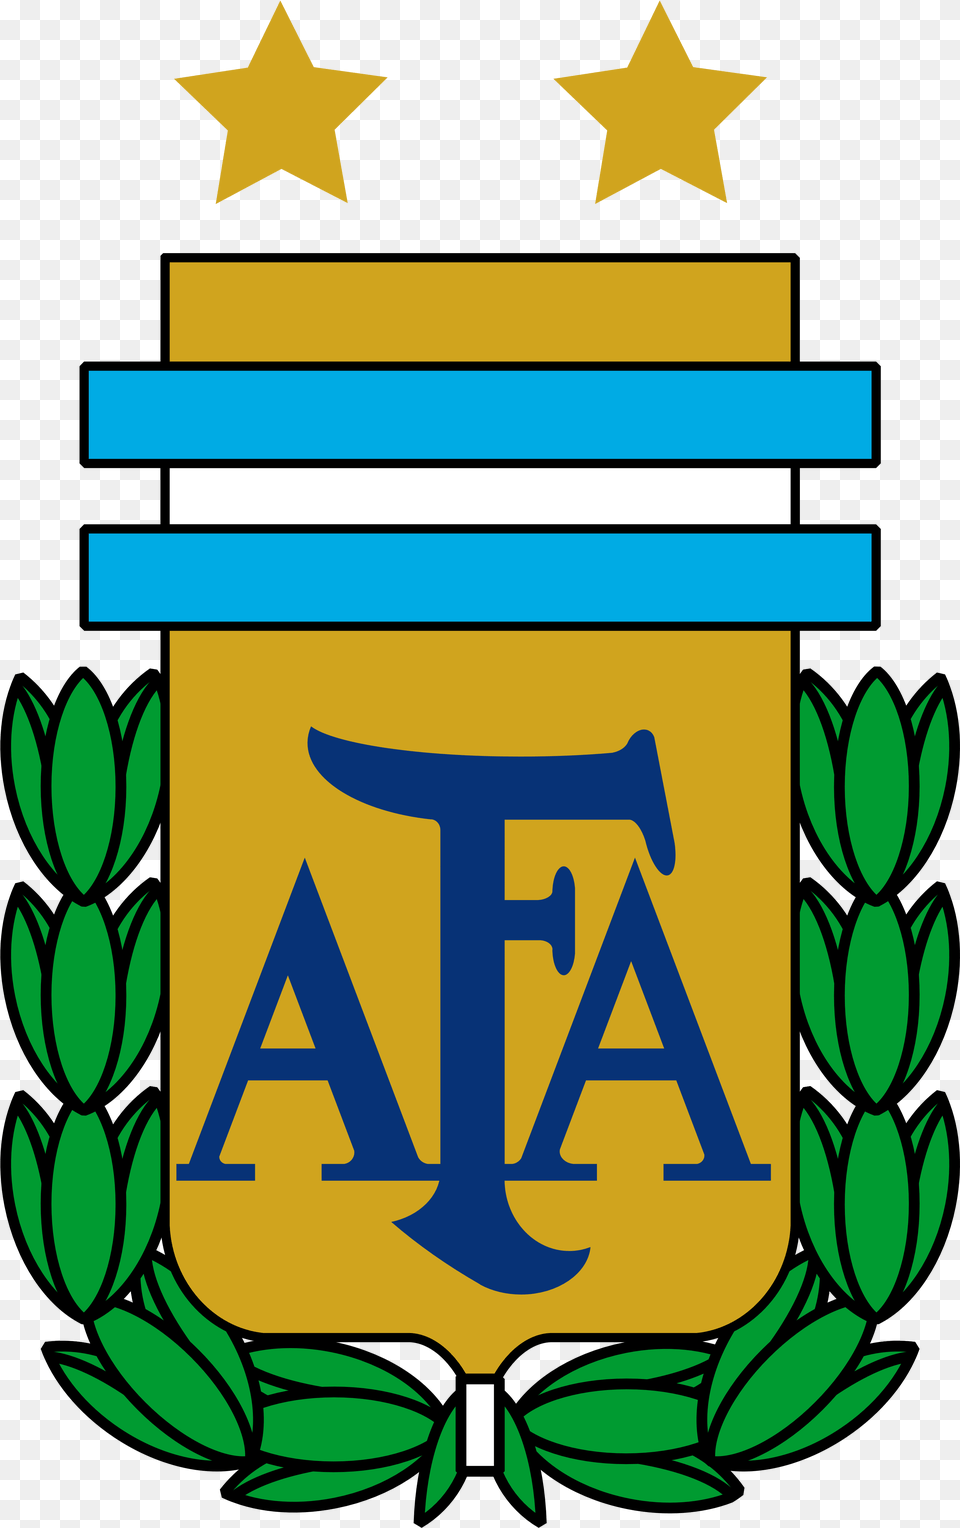 Argentina National Football Team Logo Crest Soccer Logo Argentina Dream League Soccer 2017, Symbol, Emblem Free Png Download